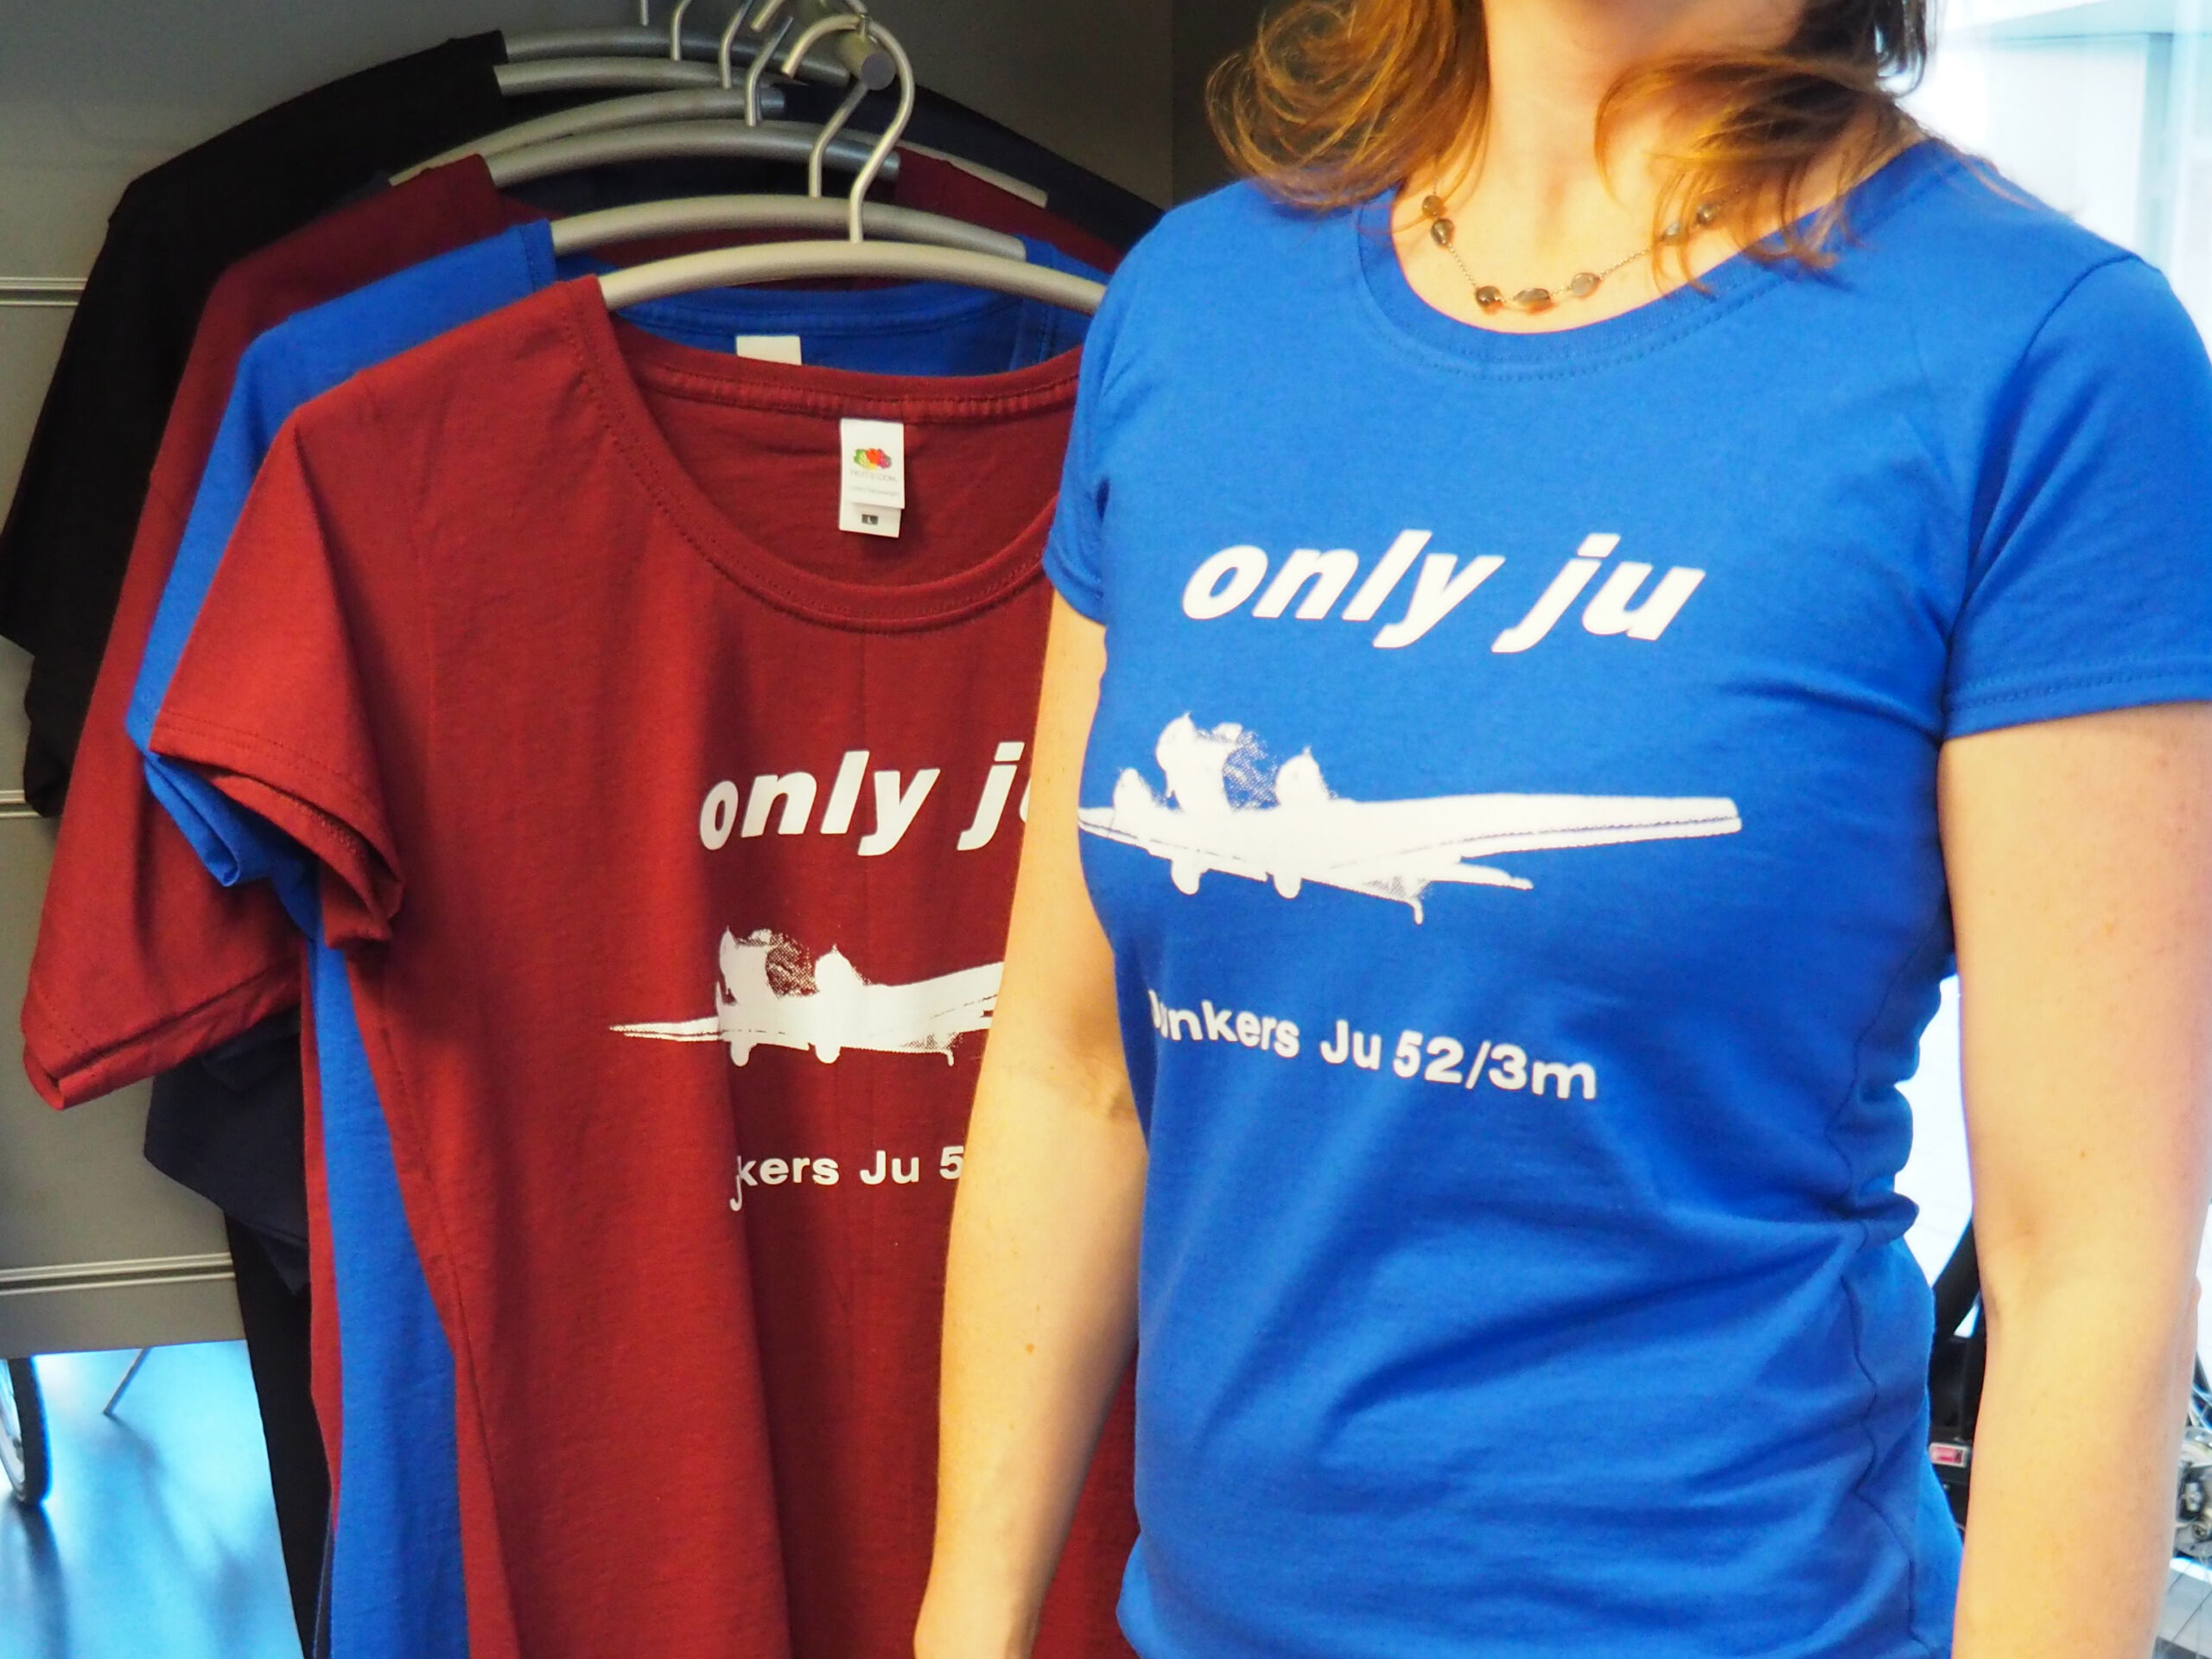 T-Shirt "Only JU"